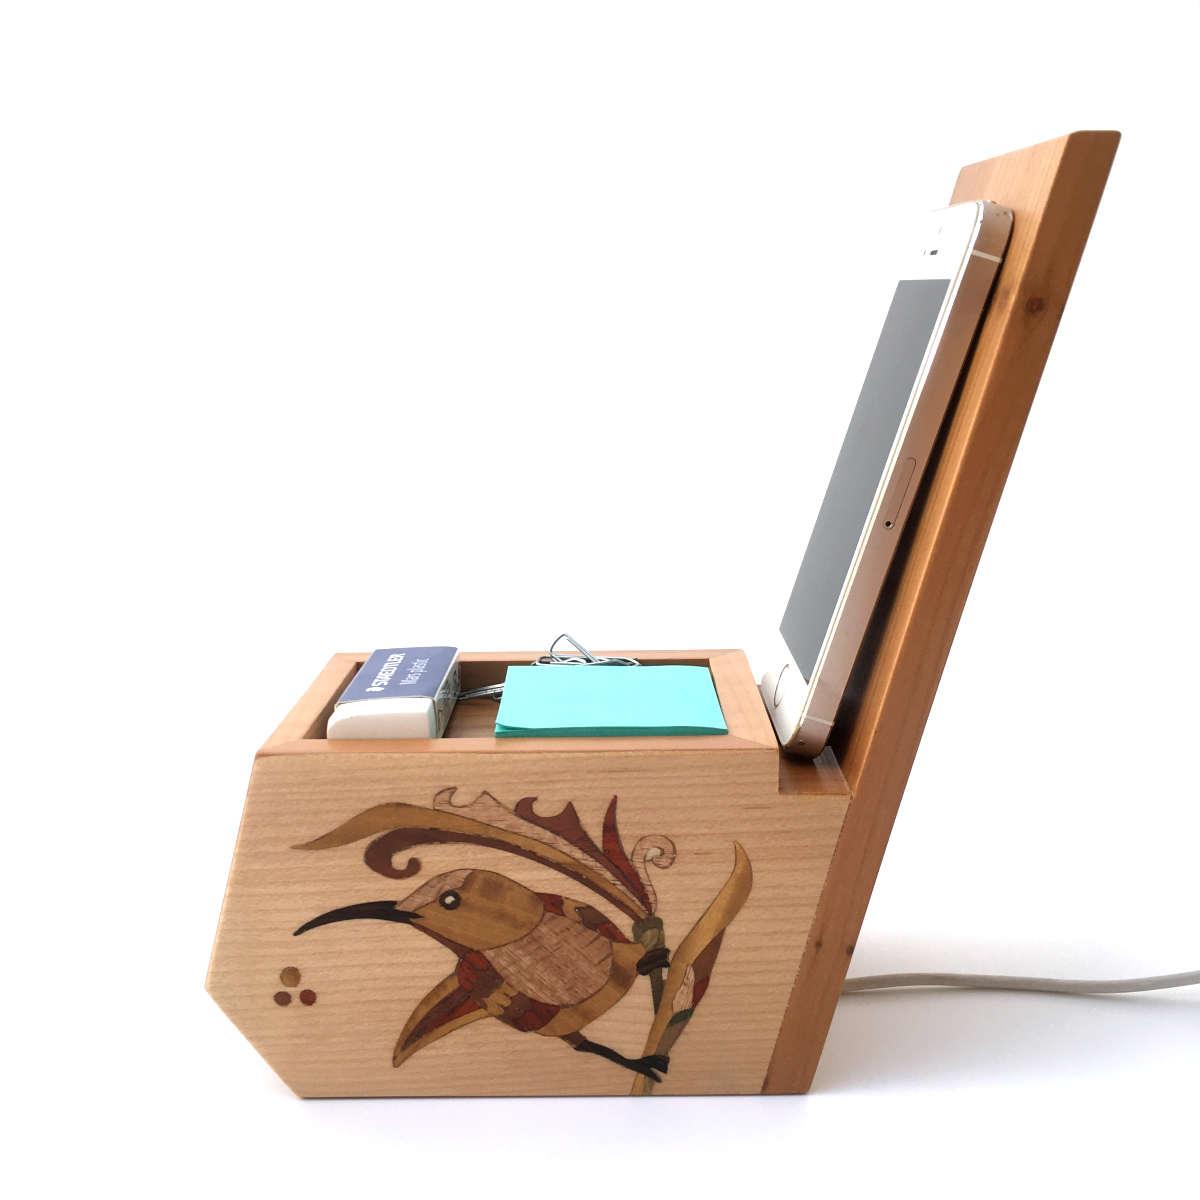 Organisateur de bureau en bois avec support téléphone, marqueterie oiseau  réf OT1 - Bois Plaisir